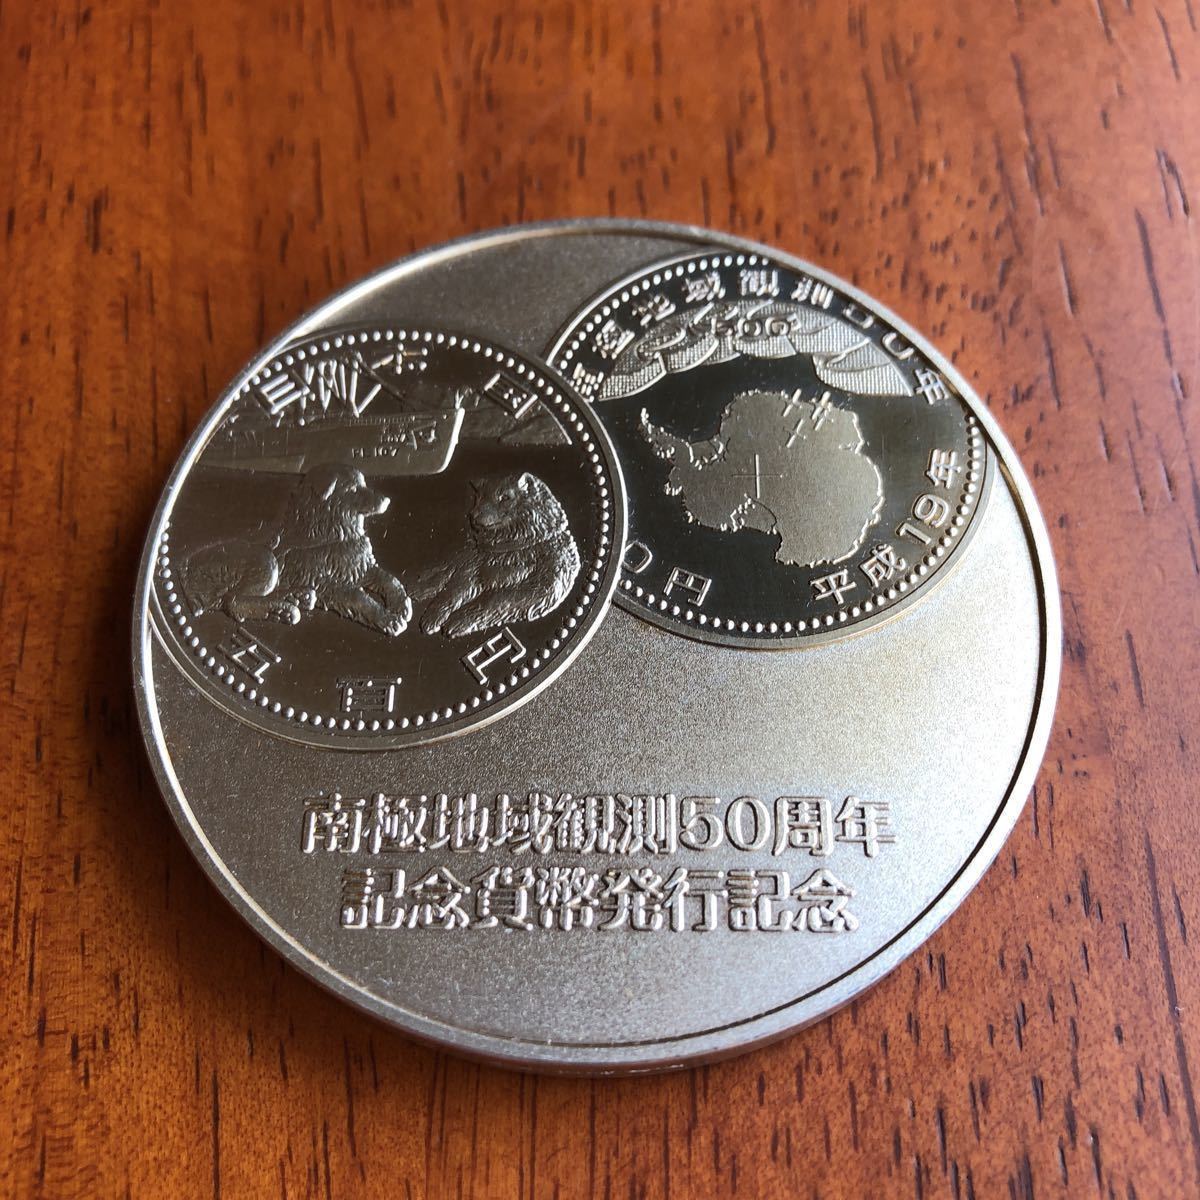 南極地域観測50周年純銀記念メダル 旧貨幣/金貨/銀貨/記念硬貨 史上最も激安